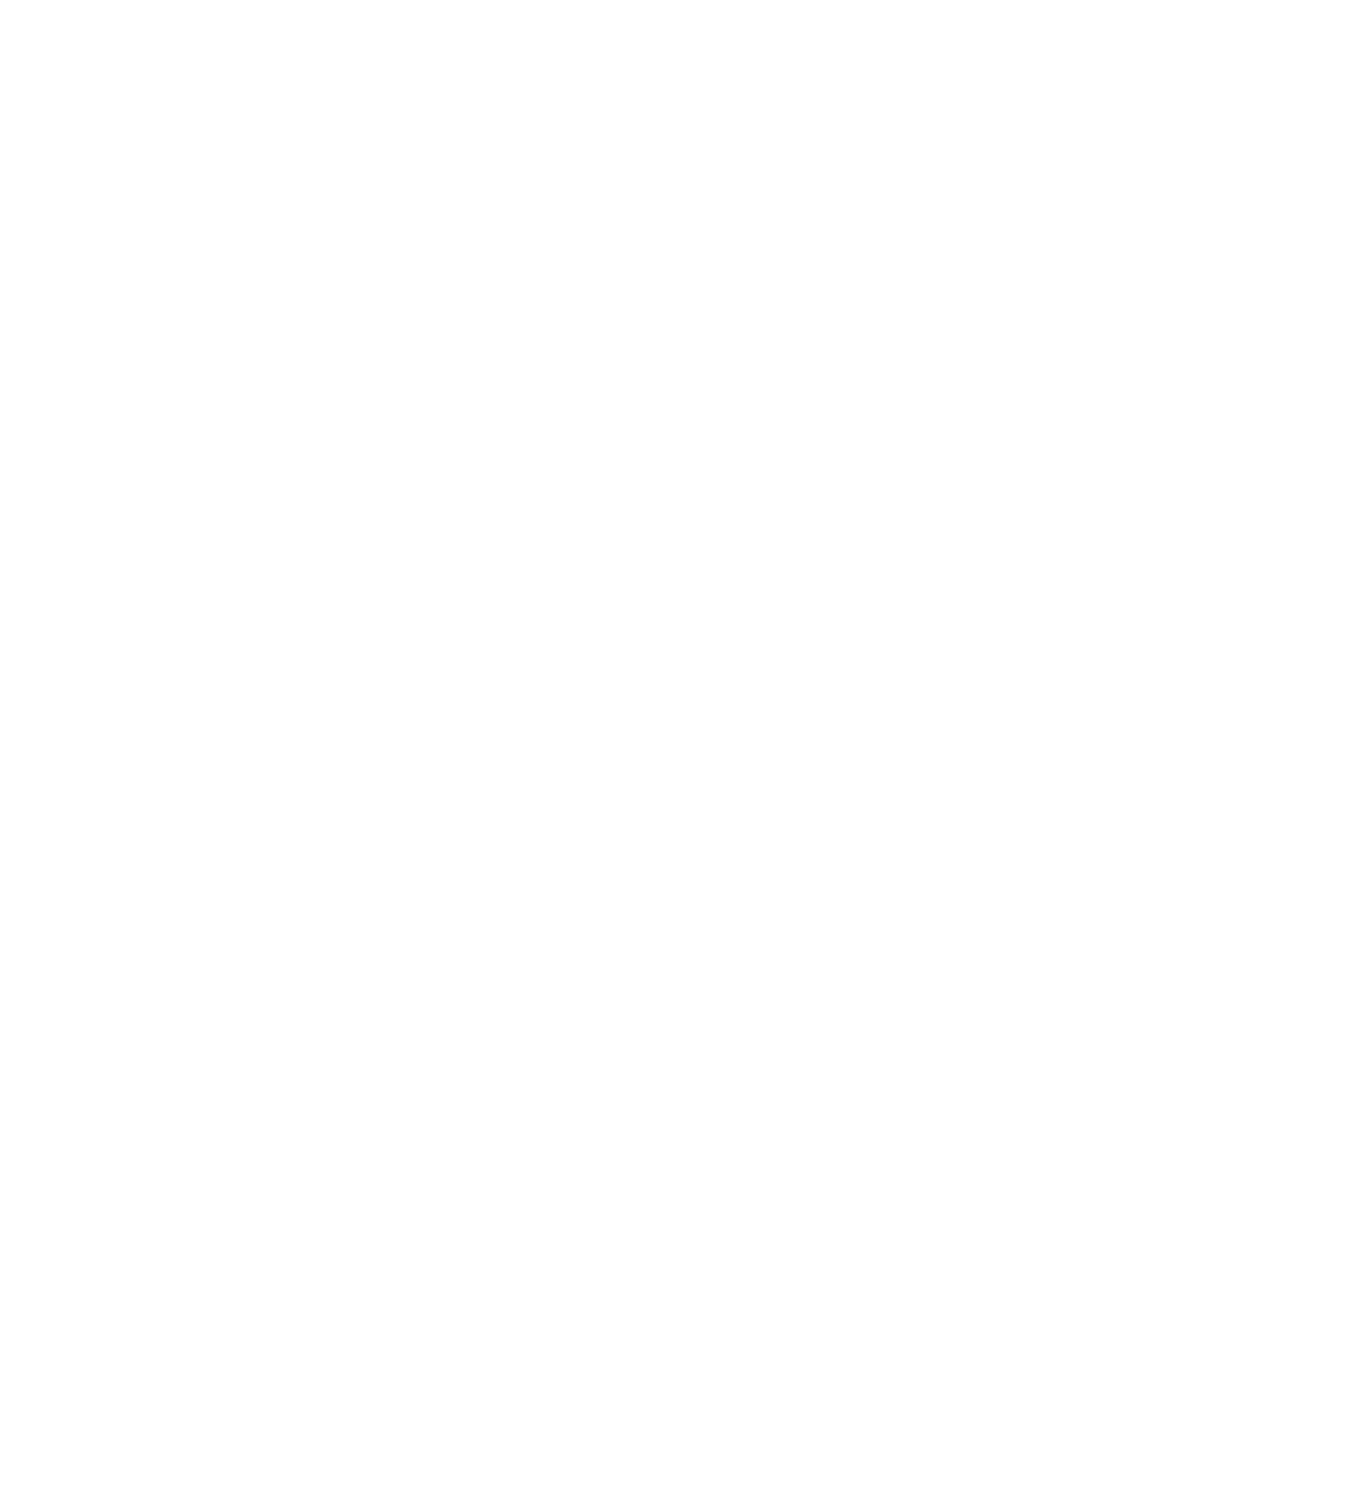 Kuwait International Bank logo for dark backgrounds (transparent PNG)